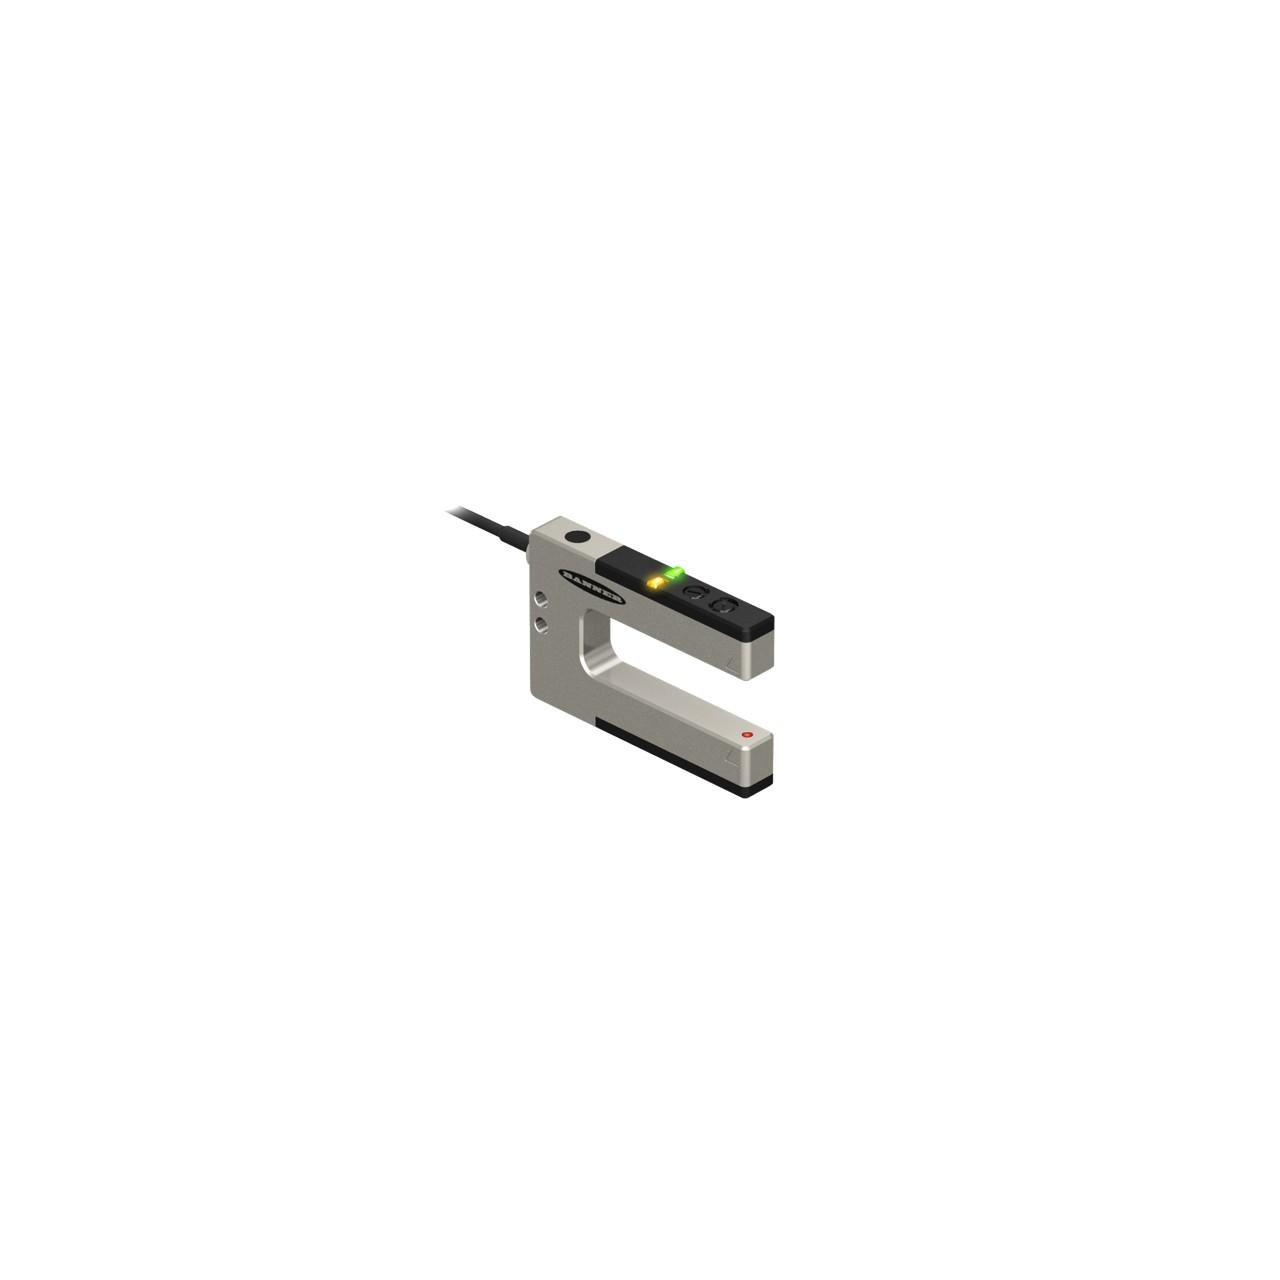 Banner SLM20B6 Photo-electric rugged metal slot / optical fork sensor - Banner Engineering (SLM series) - Part #79217 - slot width (passageway) 20mm - 1 x digital output (PNP/NPN transistor) (Light-ON or Dark-ON operation) - Supply voltage 10Vdc-30Vdc (12Vdc / 24Vdc nom